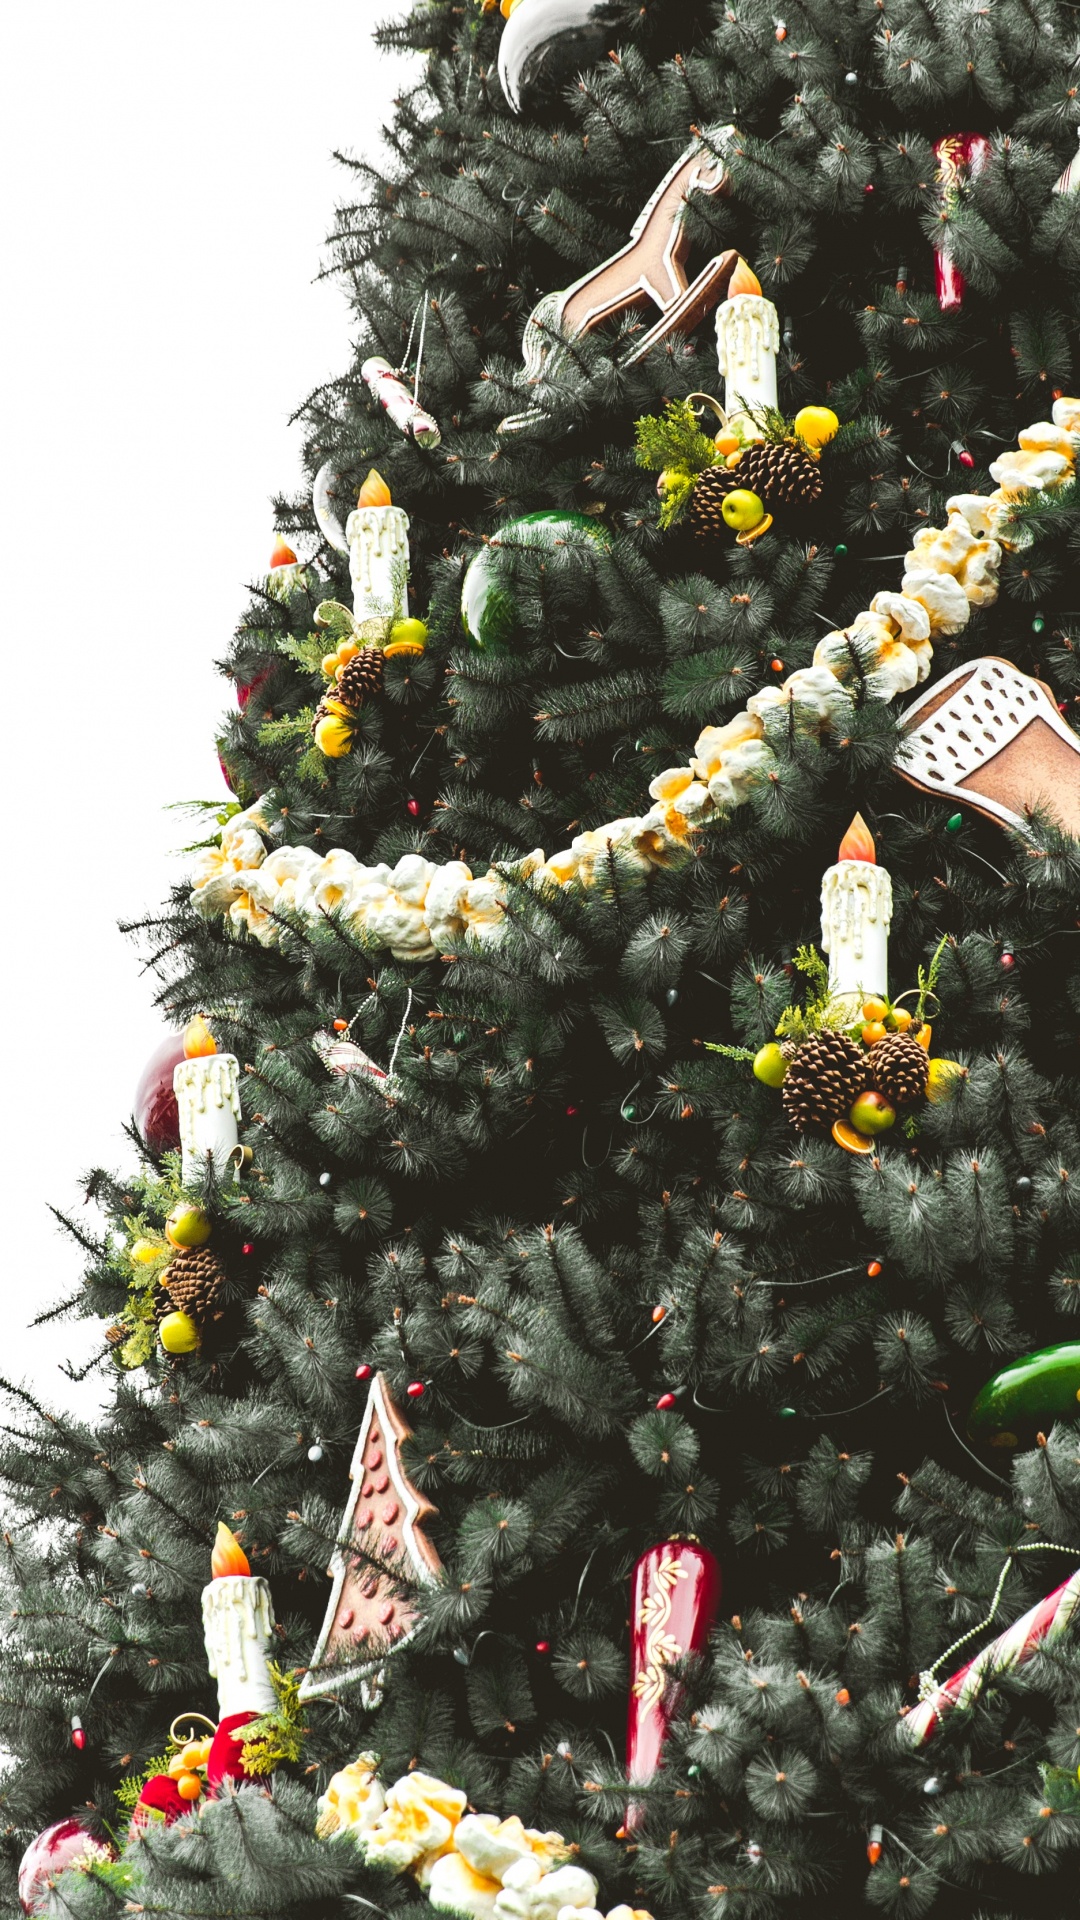 El Día De Navidad, la Navidad y la Temporada de Vacaciones, Planta Leñosa, Evergreen, Decoración de la Navidad. Wallpaper in 1080x1920 Resolution